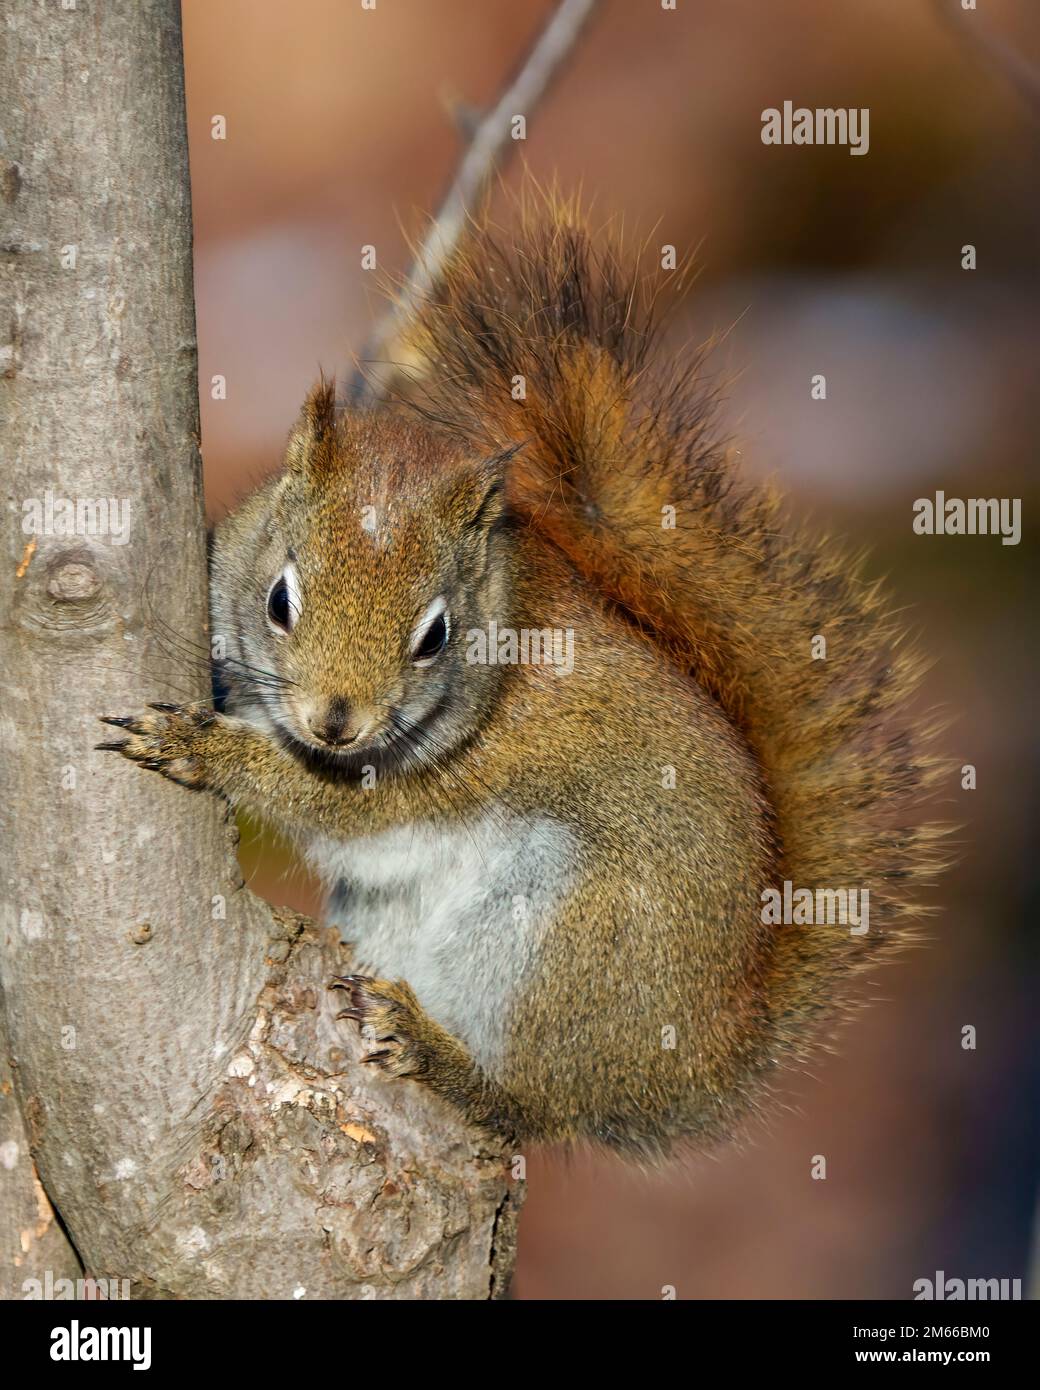 Eichhörnchen Nahaufnahme Profilansicht im Wald stehend auf einem Ast Baum mit einem unscharfen Hintergrund zeigt seine braunen Fell, Pfoten, buschigen Schwanz, in seiner Gewohnheit Stockfoto